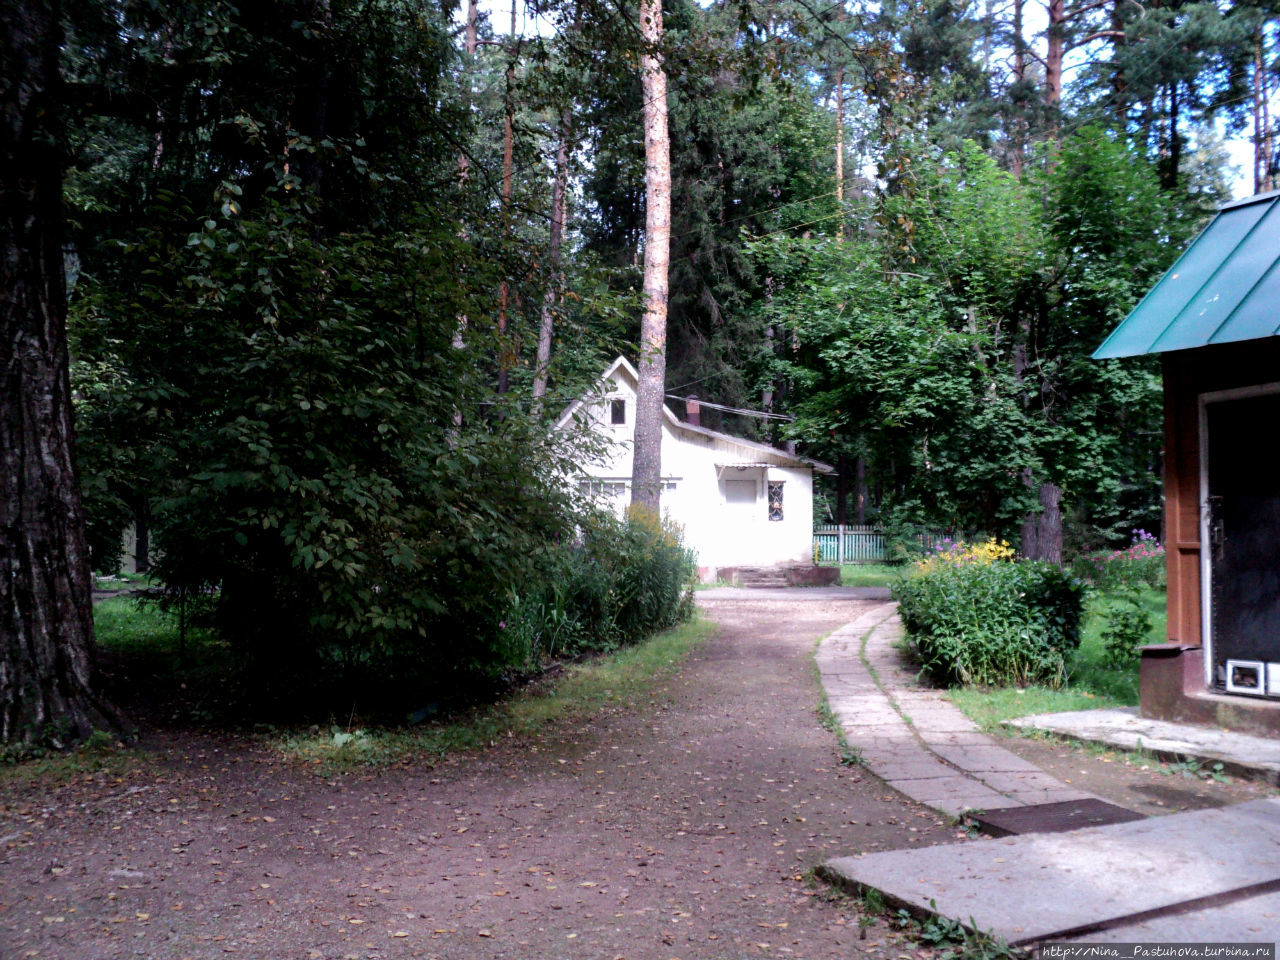 Дом — музей Корнея Чуковского Переделкино, Россия